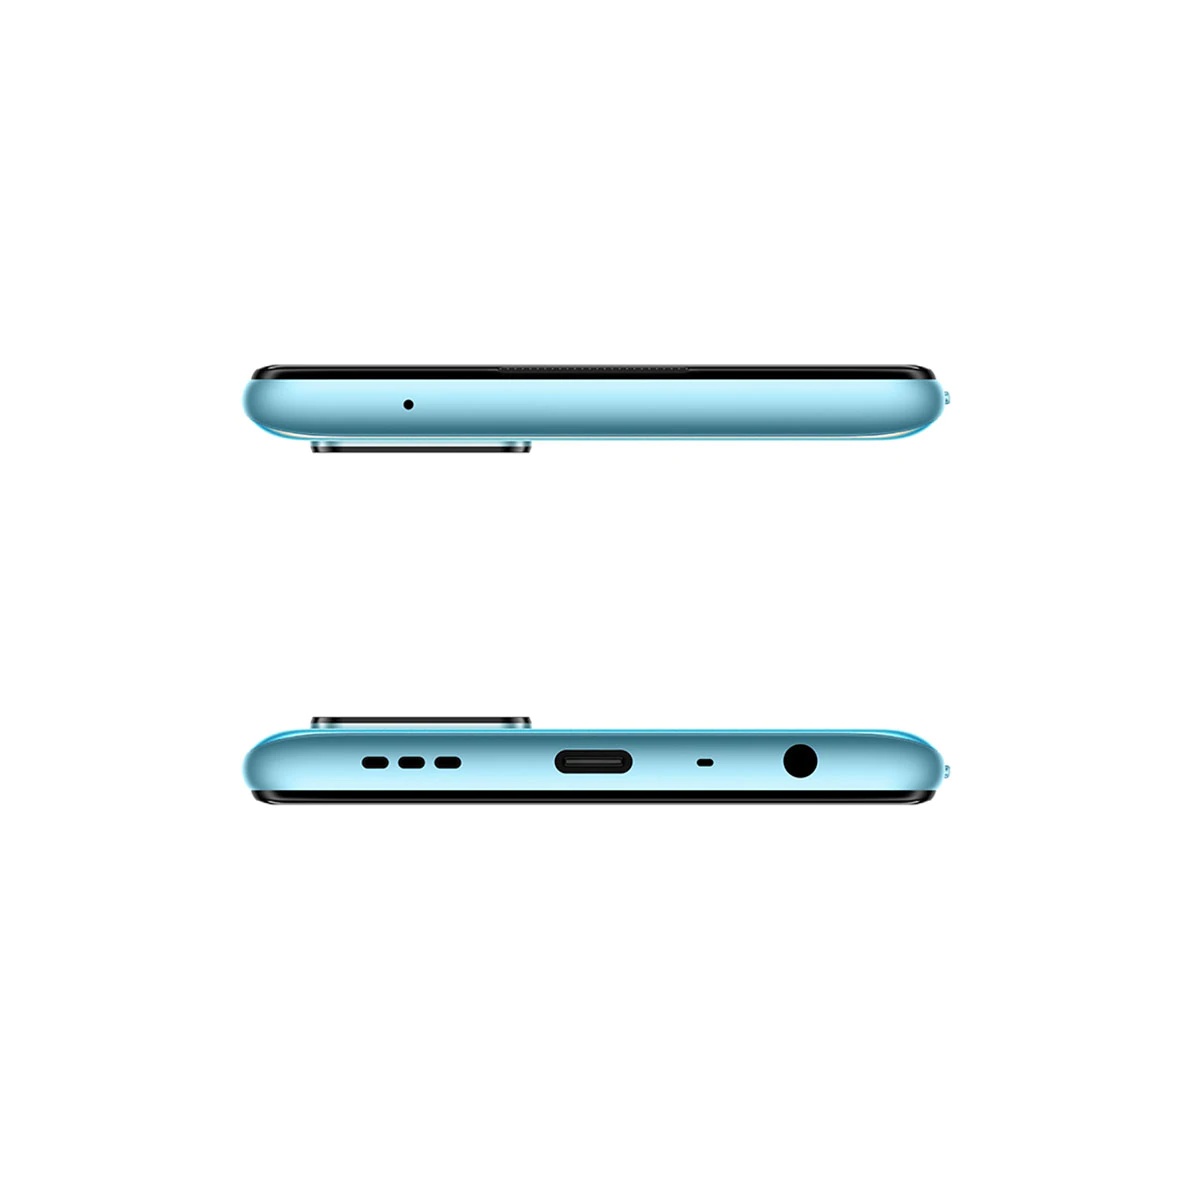 OPPO lancia il nuovo smartphone A76